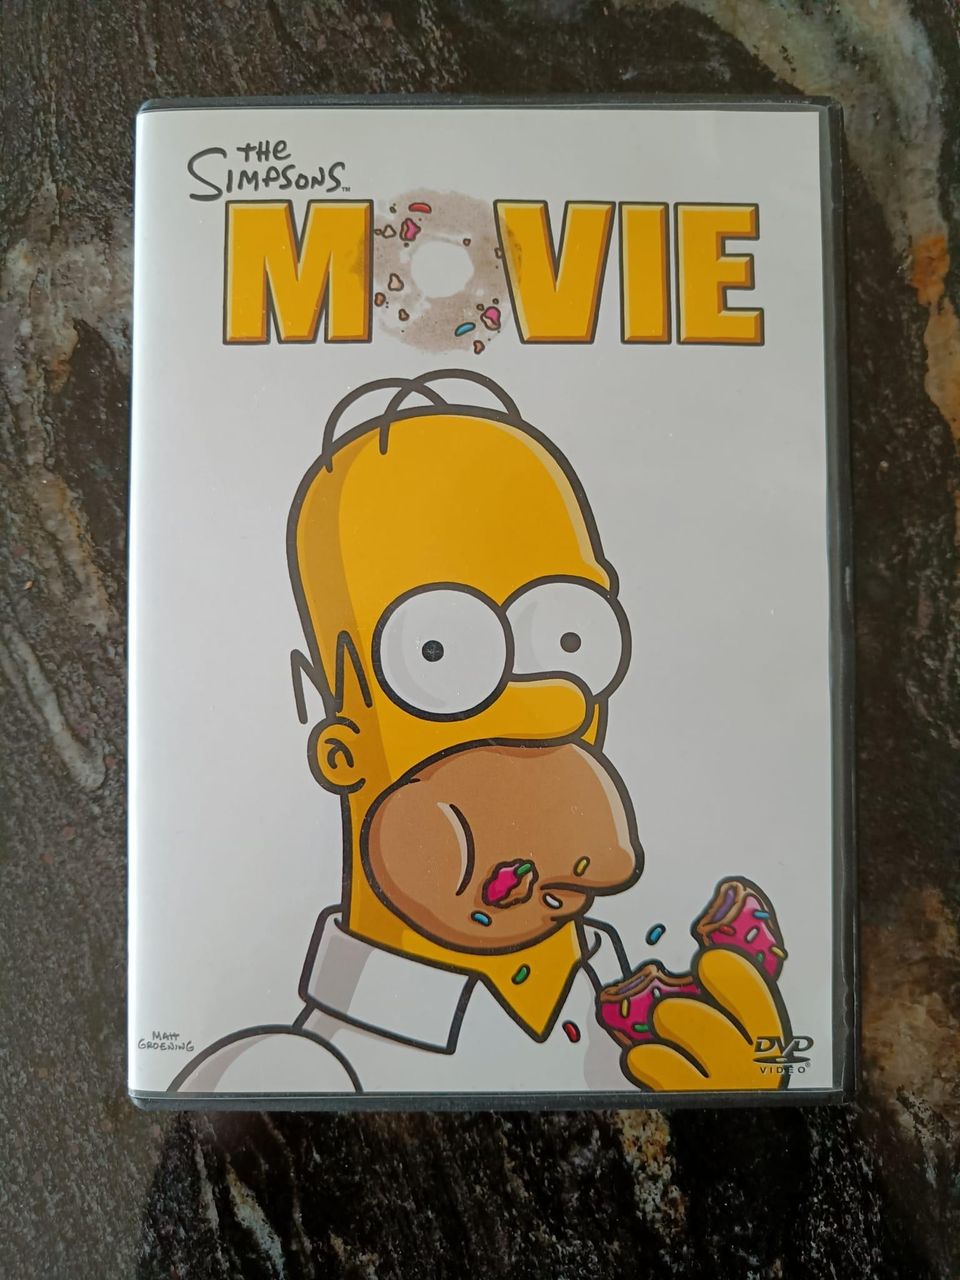 The Simpsons movie DVD